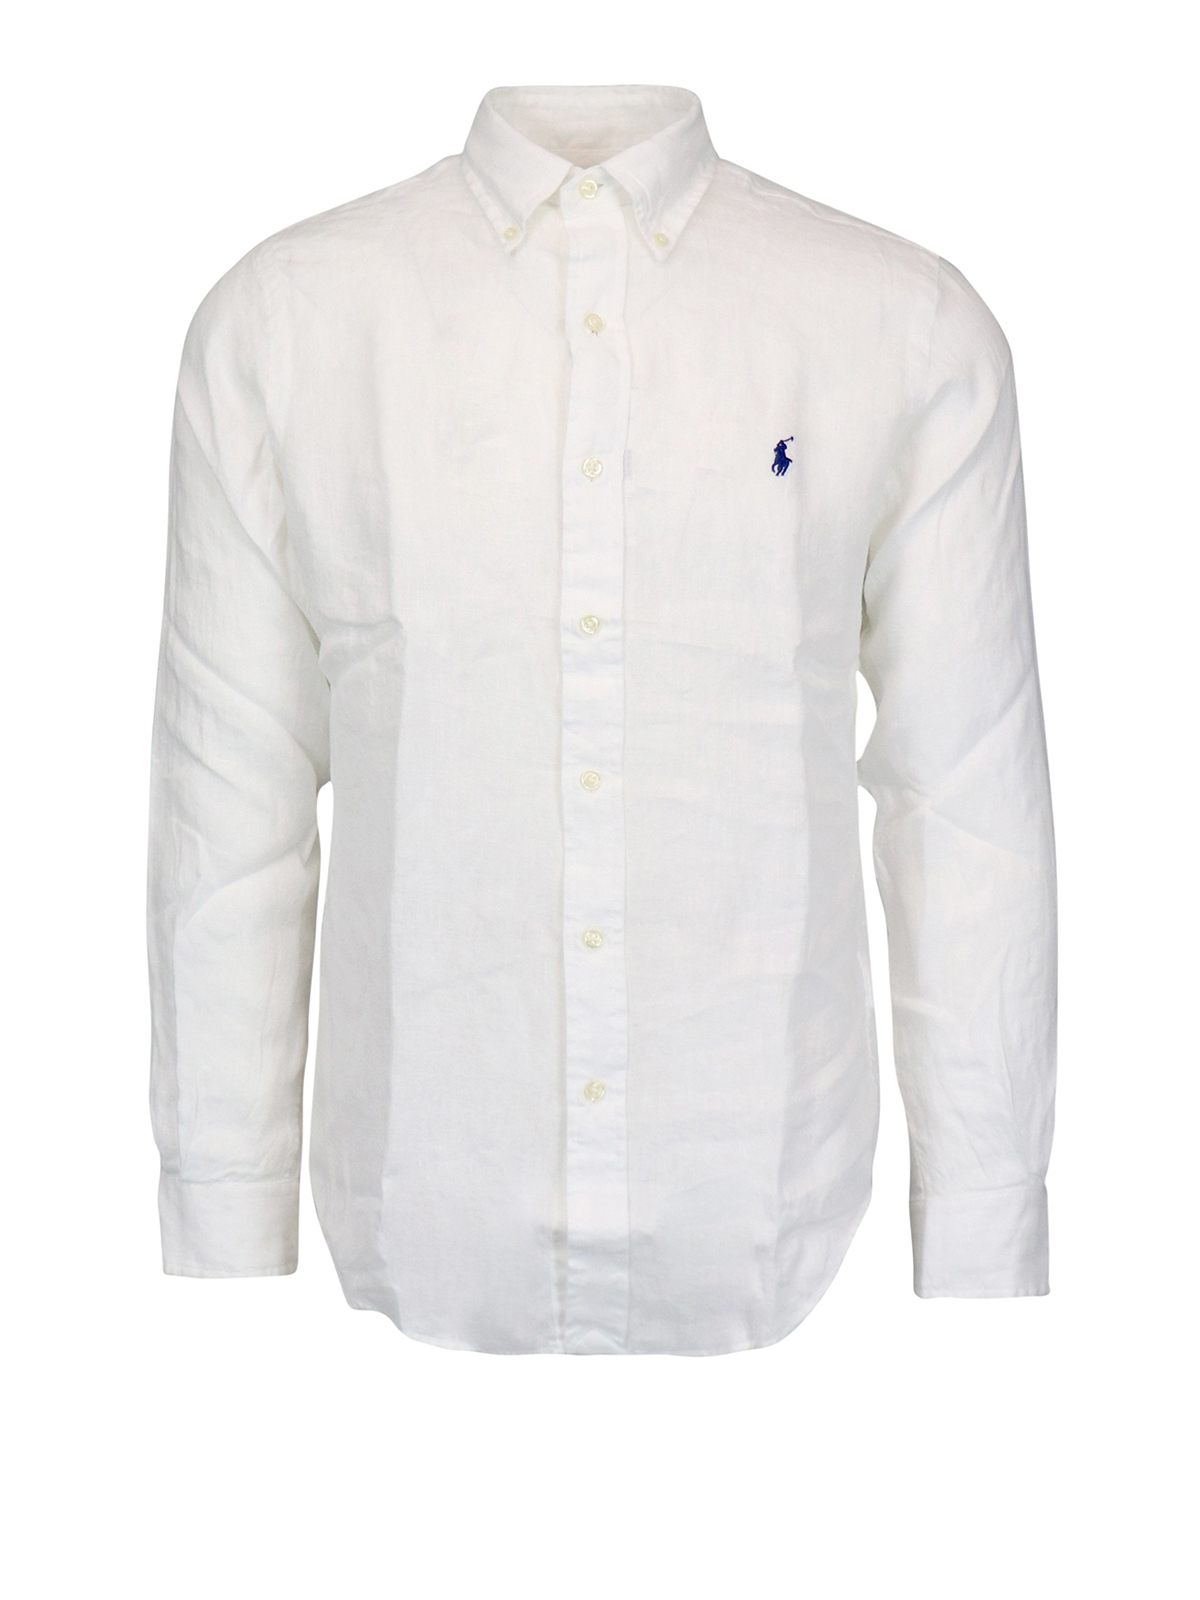 Polo Ralph Lauren - White linen shirt - shirts - 710794141005 | iKRIX.com